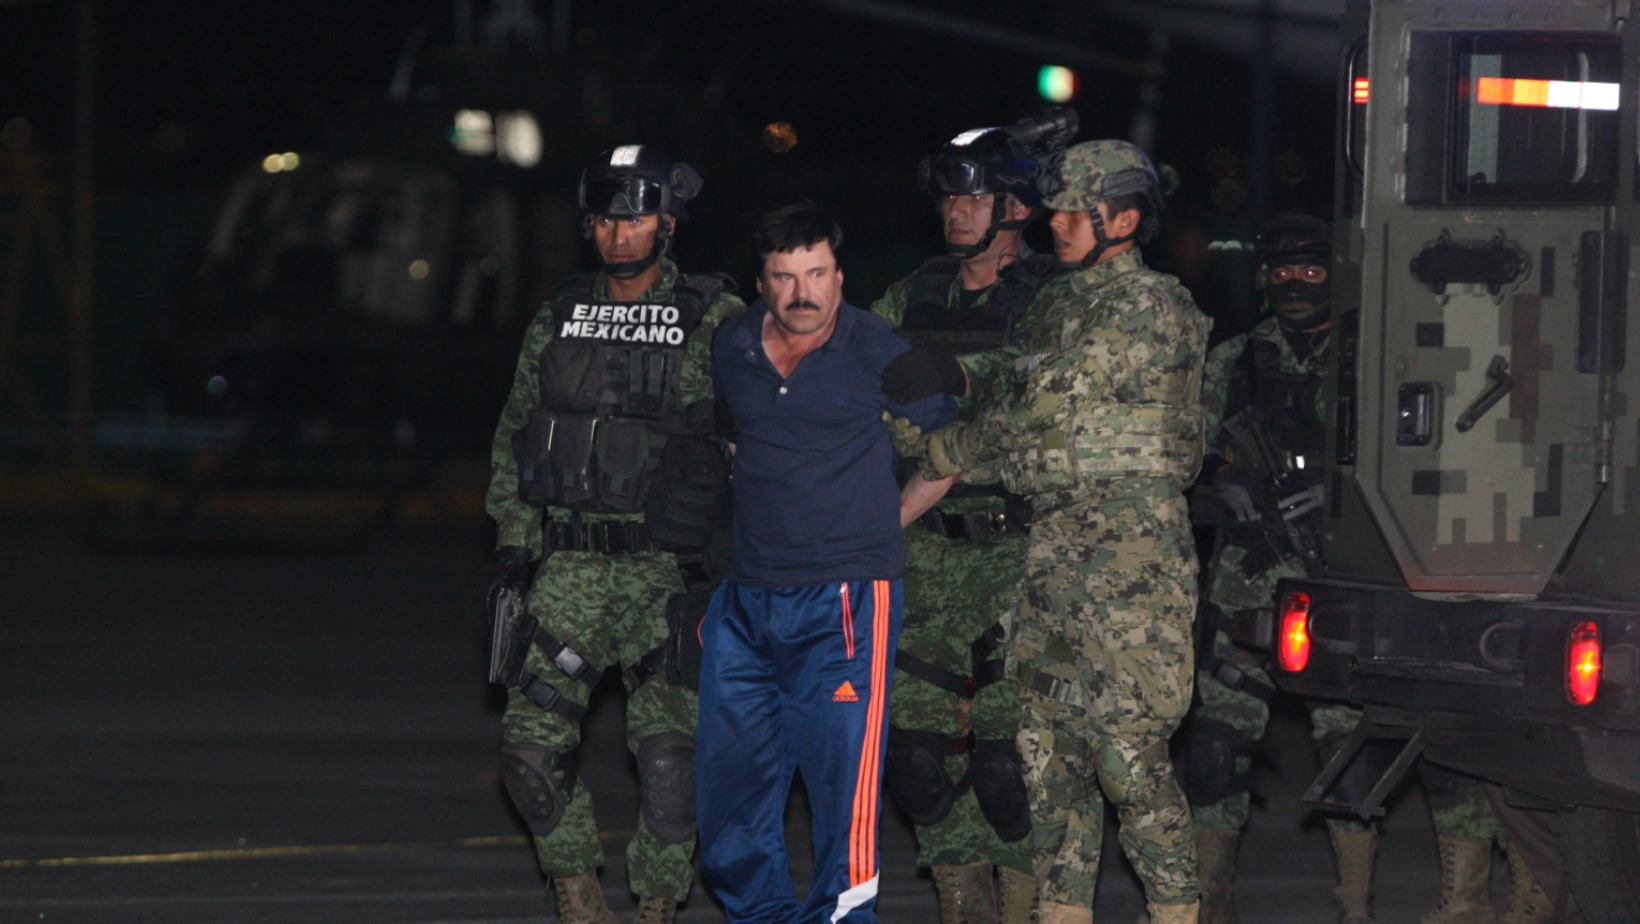 Deniegan solicitud para llamadas y visitas familiares a 'El Chapo' Guzmán